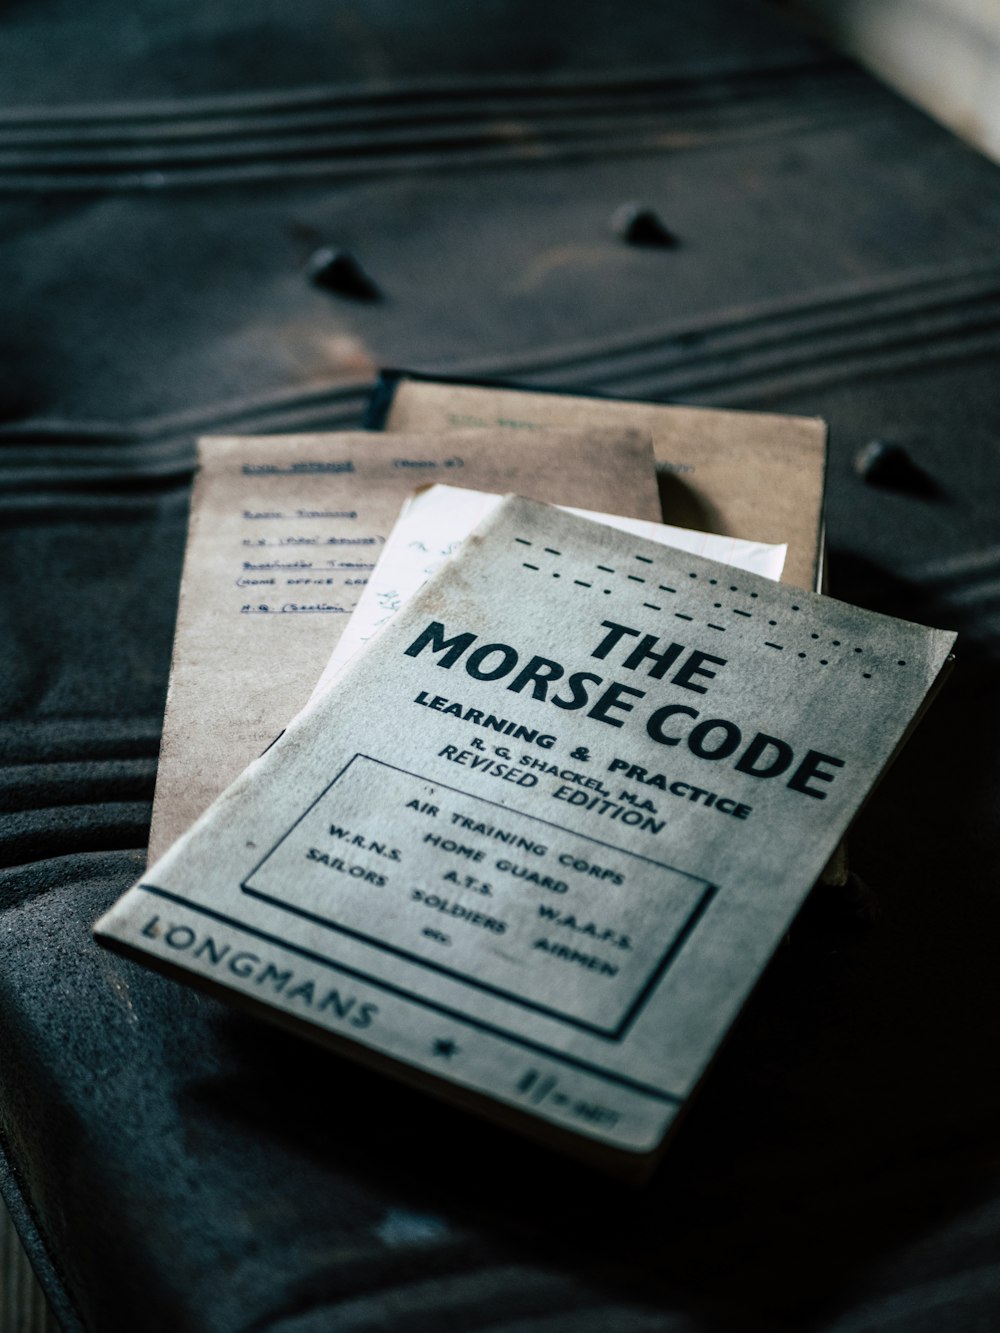 Le livre de code Morse